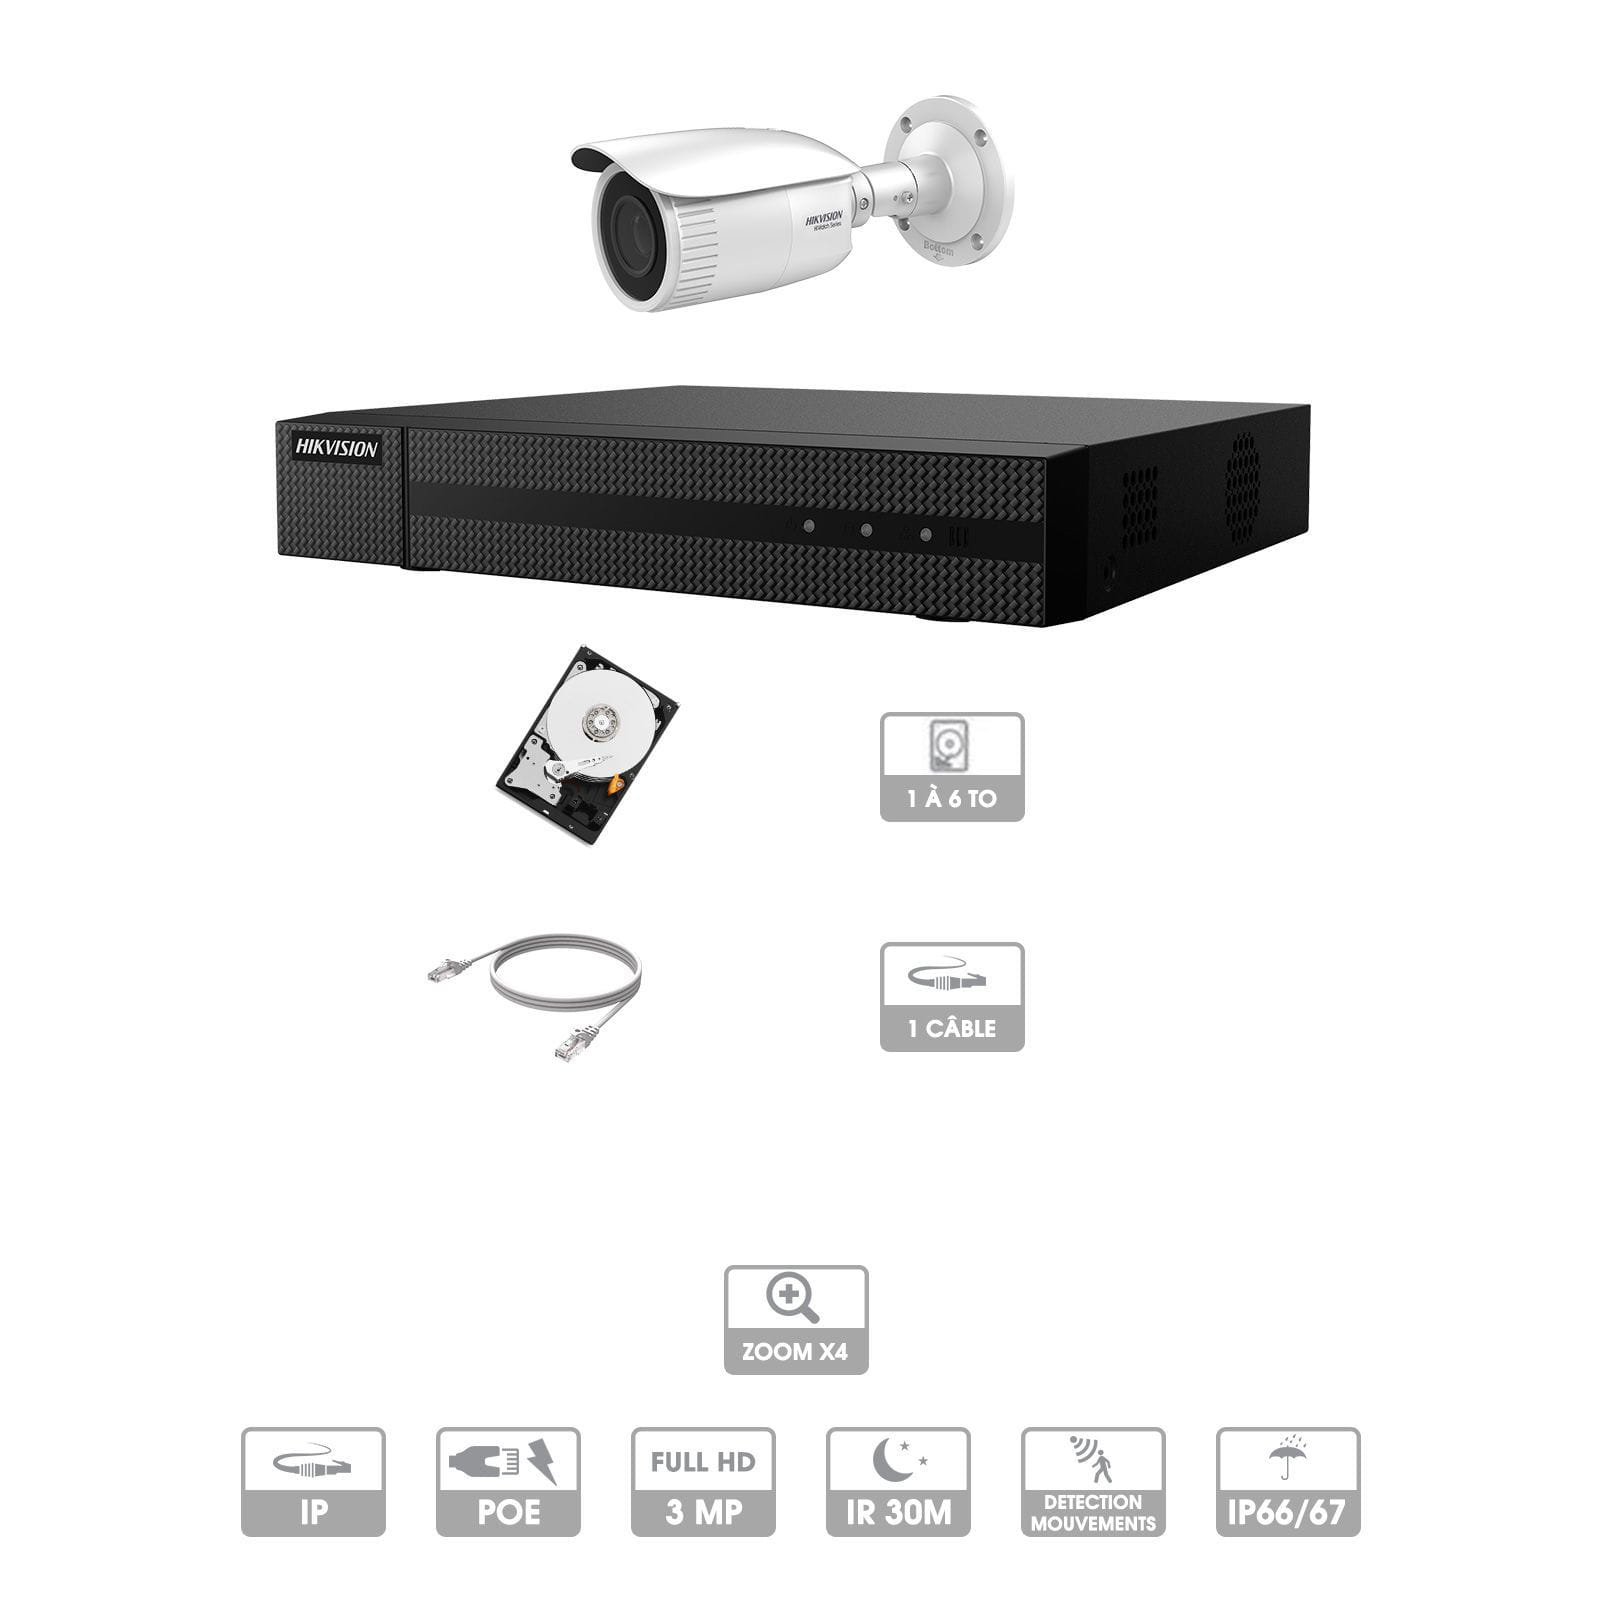 Kit vidéosurveillance 1 caméra | 3 MP | IP PoE | Zoom x4 | 1 câble RJ45 20/30/40/50 mètres | HDD 1 à 6 To | Tube Hiwatch